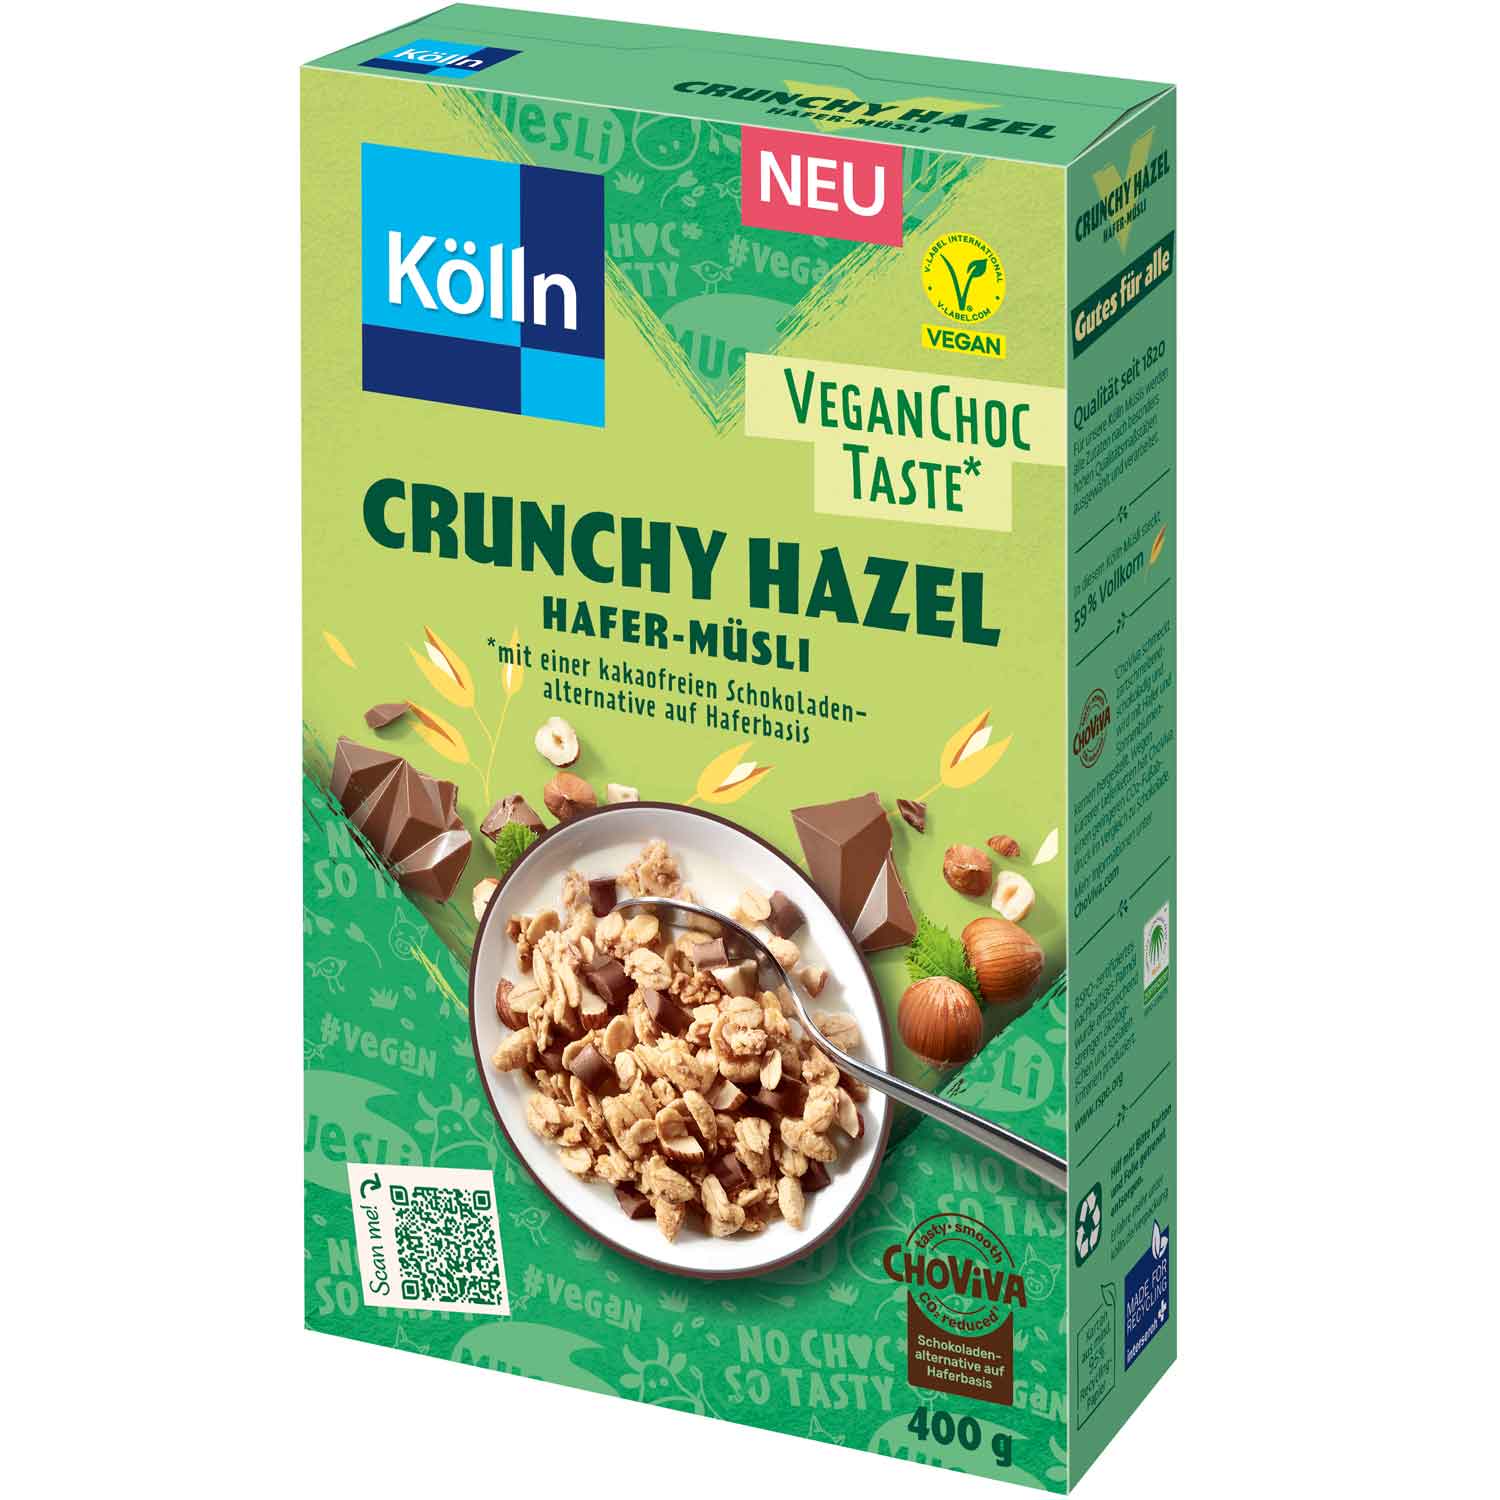 Kölln Hafer-Müsli Crunchy Hazel Vegan Choc Taste 400g | Online kaufen im  World of Sweets Shop